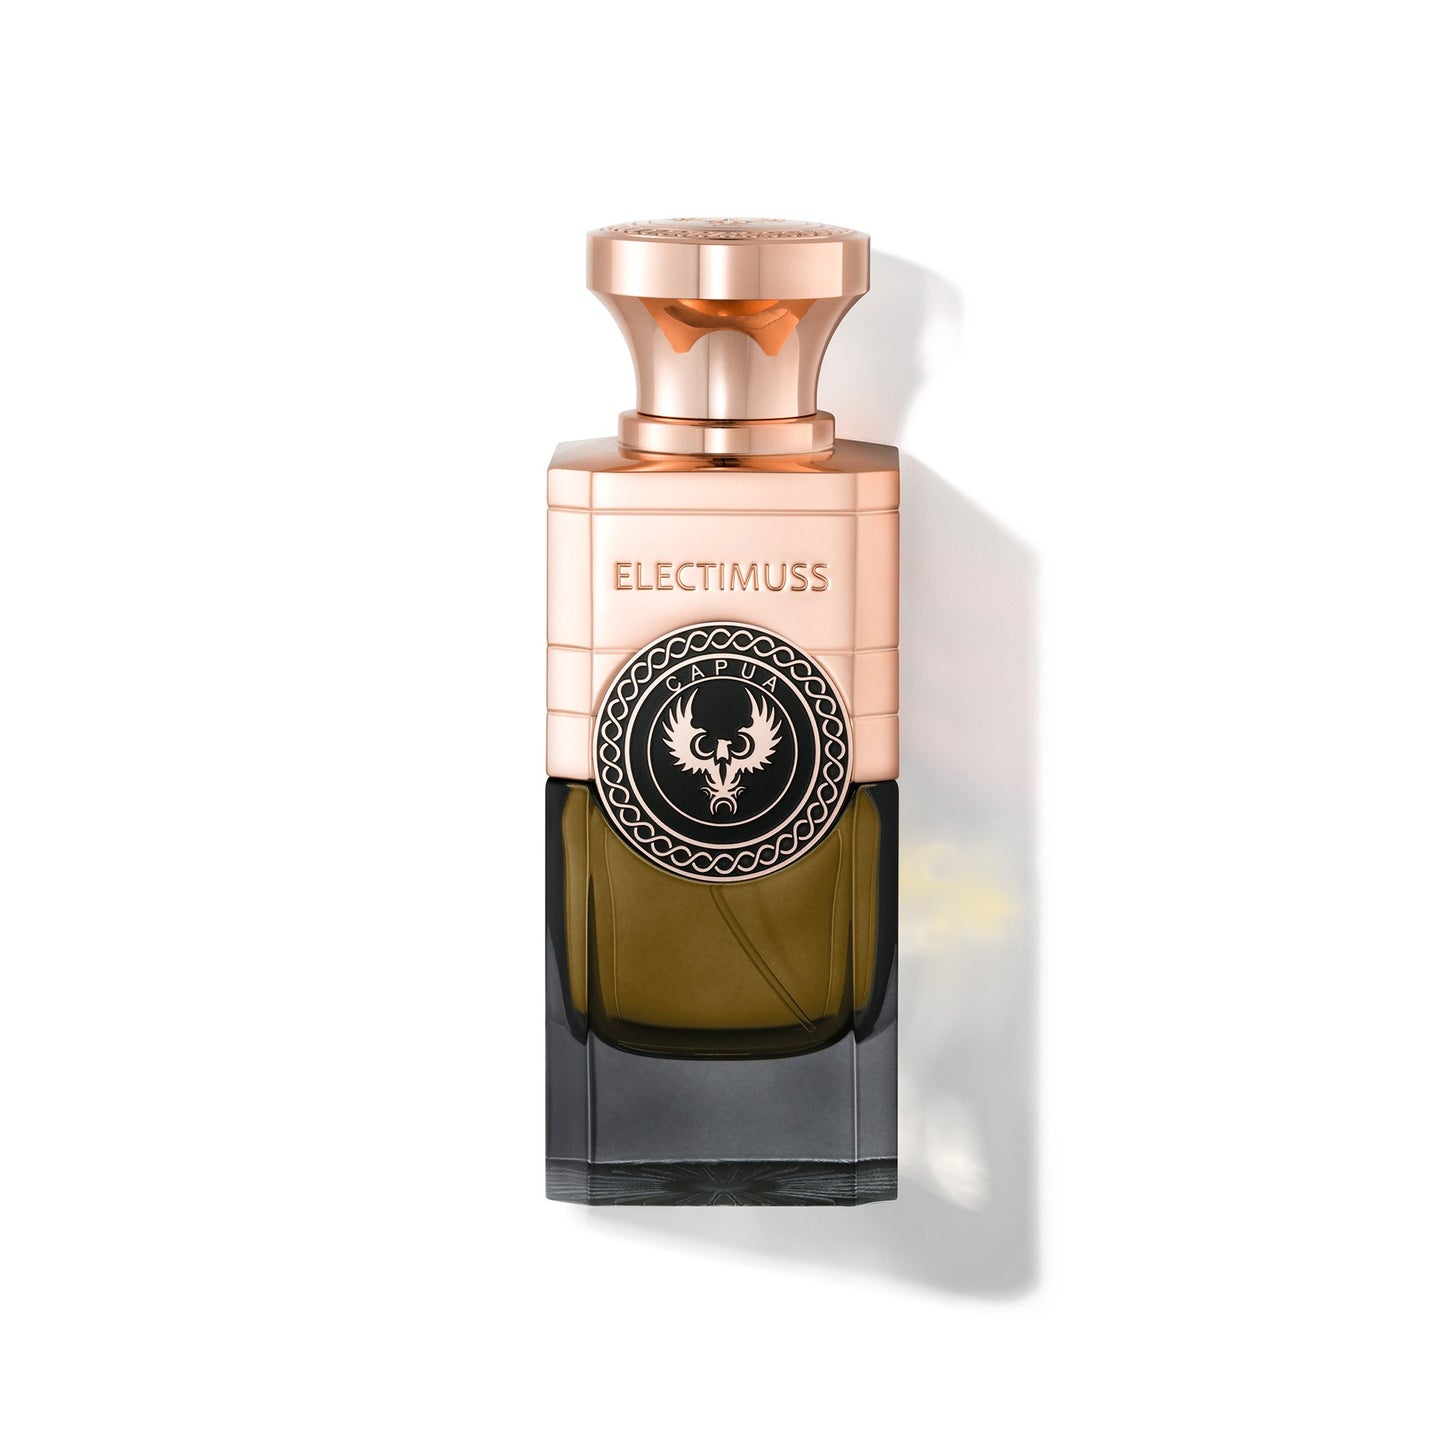 Mercurial Cashmere 1.8ml Sample Vial - Extrait de Parfum